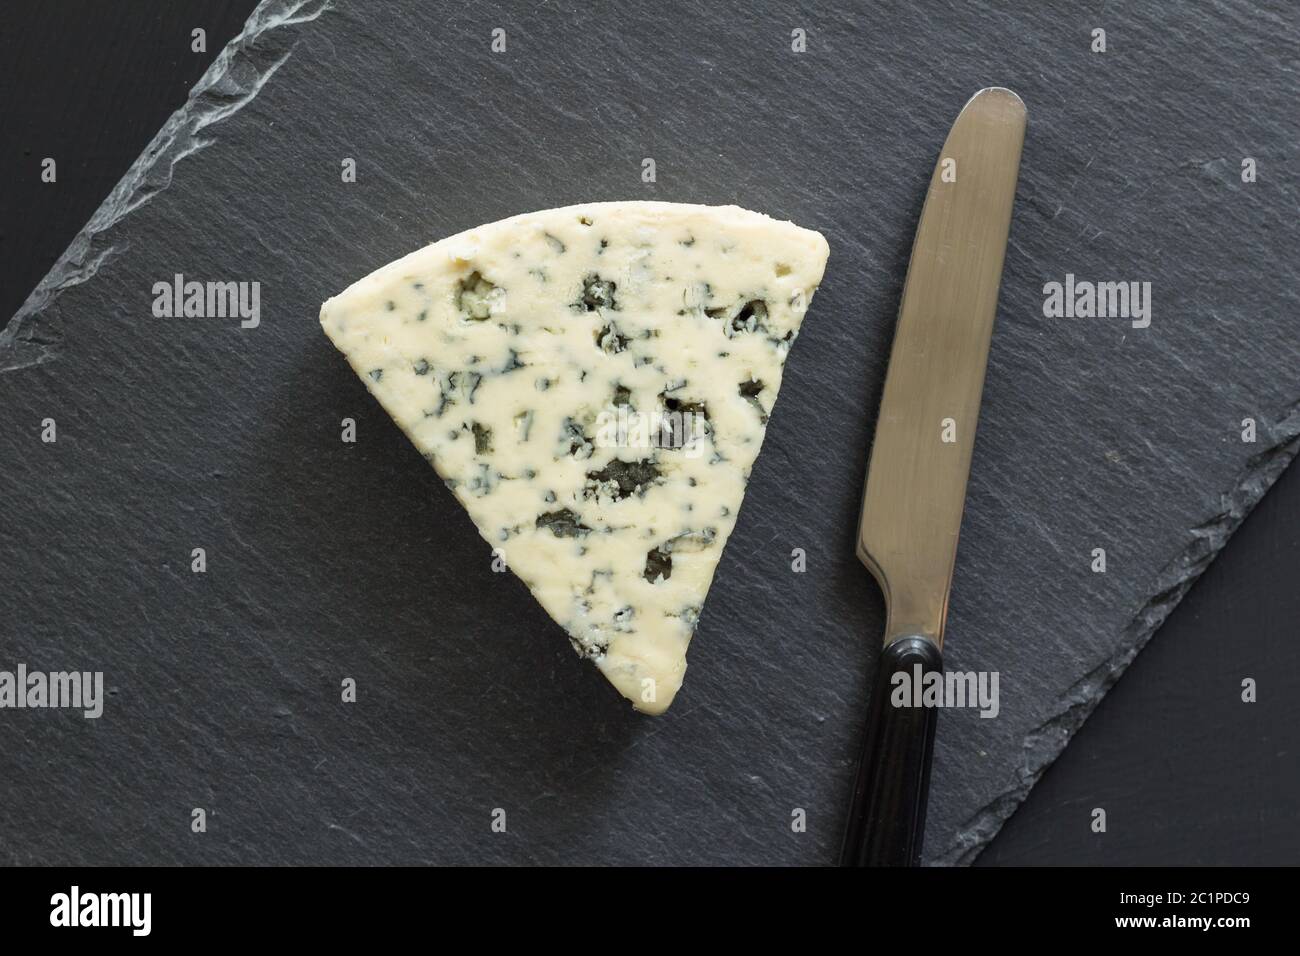 Blue Cheese Triangle mit Messer isoliert auf schwarzem Schiefer Käse Board - Roquefort Typ Käse top vie Stockfoto